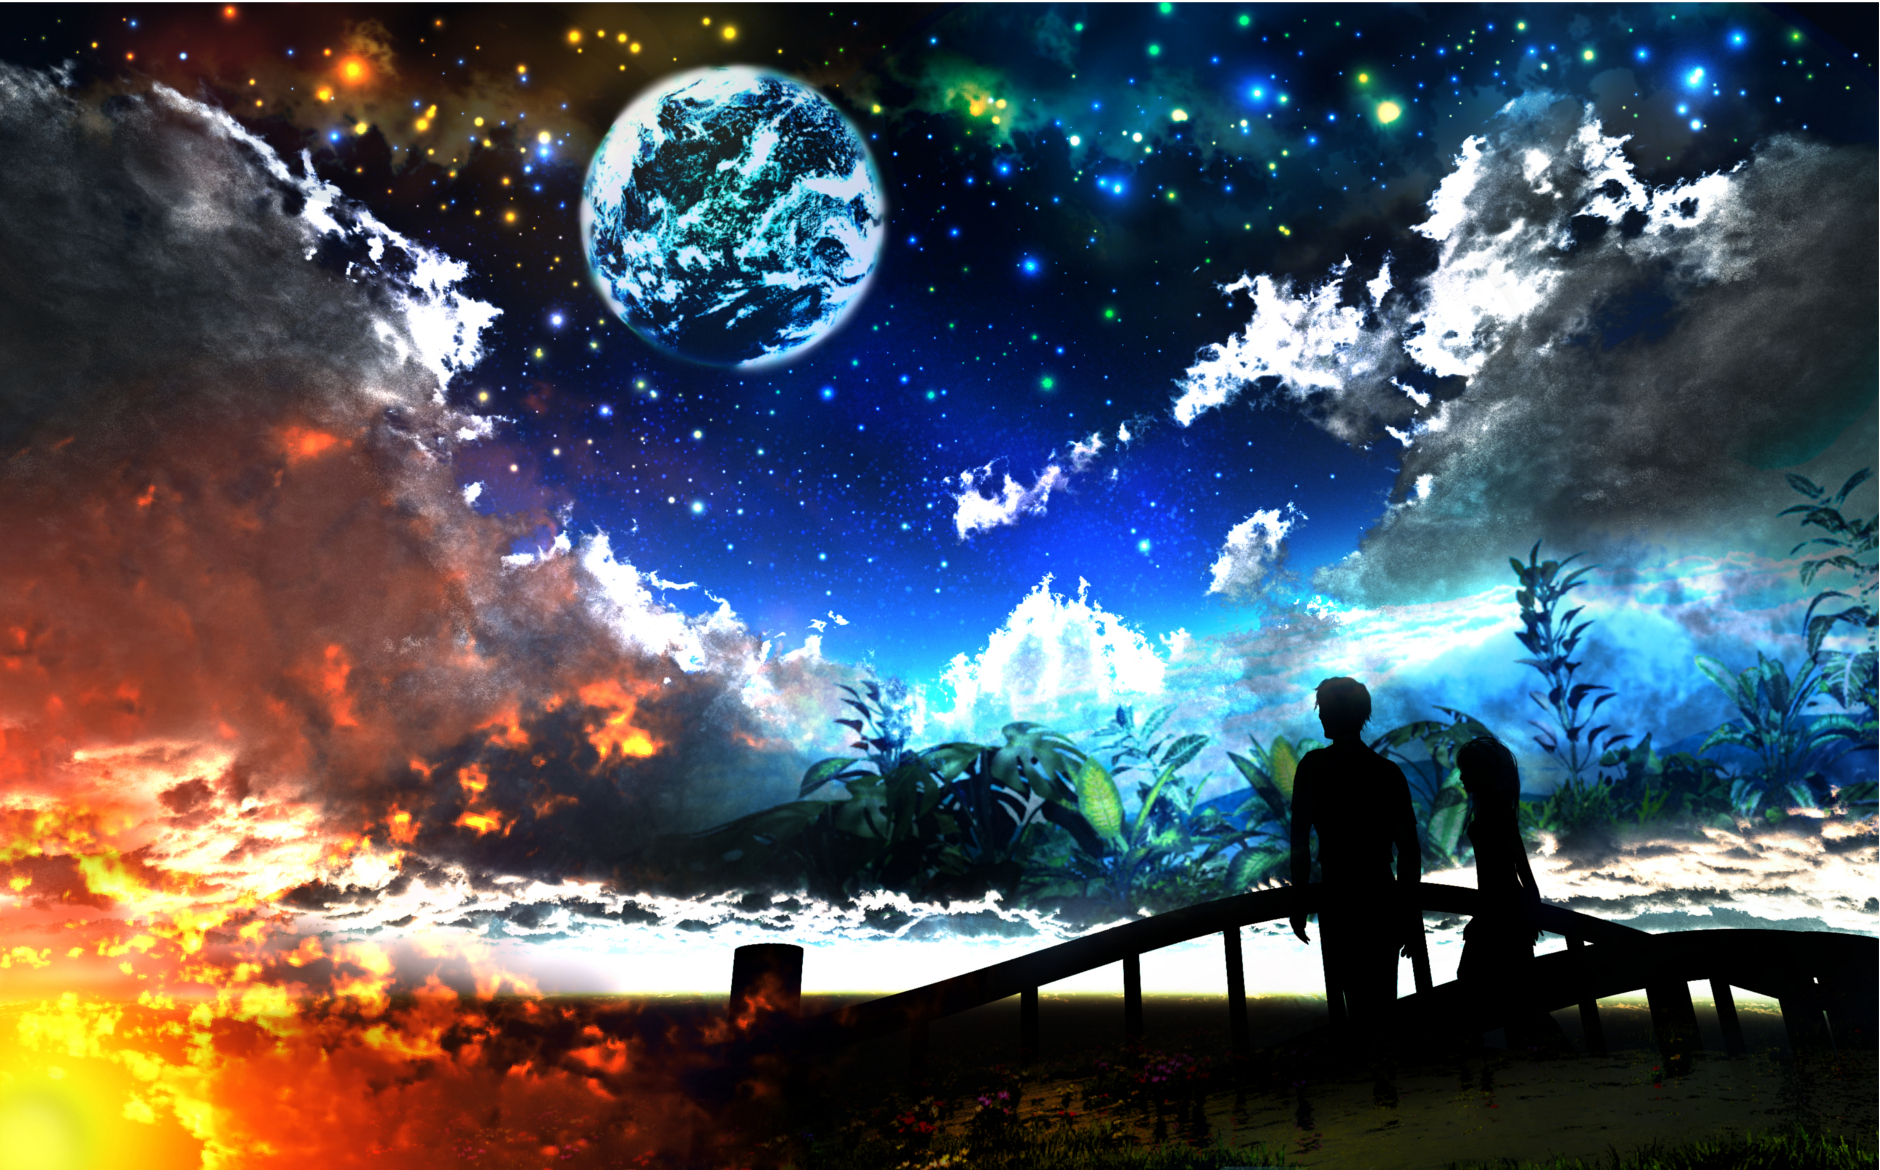 Скачать обои бесплатно Аниме, Небо, Огонь, Звезды, Ночь, Облака, 3D, Мост, Планета, Фантастика, Графика, Оригинал картинка на рабочий стол ПК